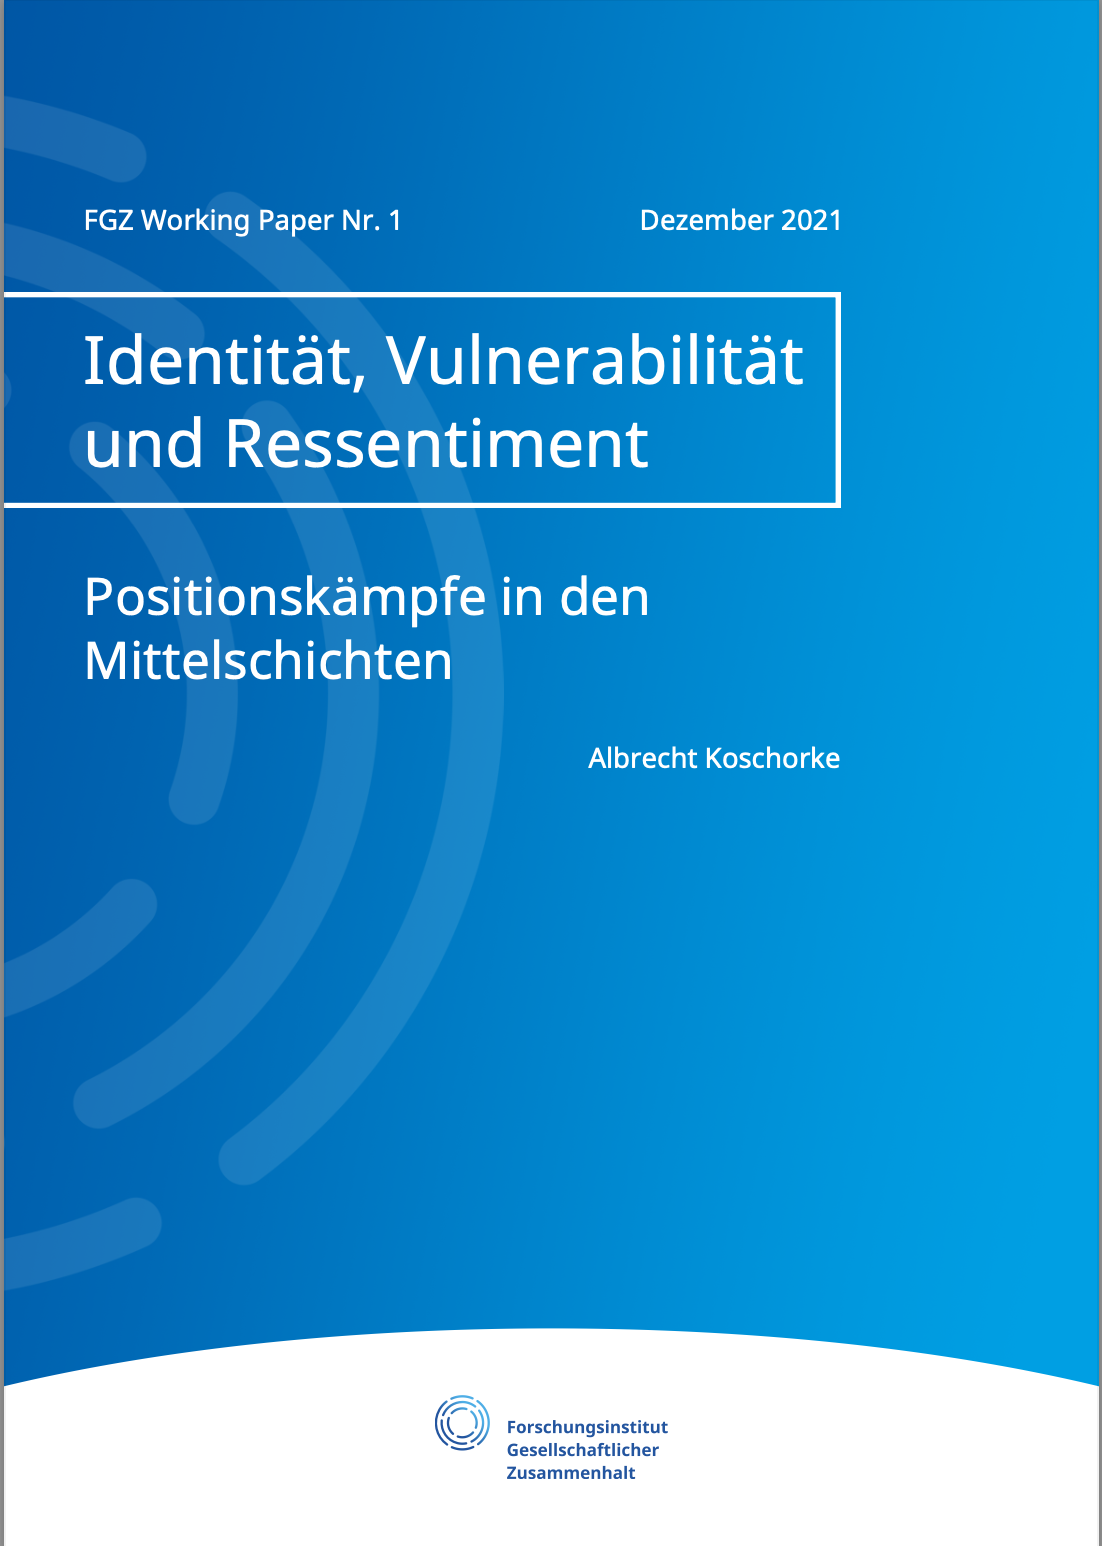 Identität, Vulnerabilität & Ressentiment. Positionskämpfe in den Mittelschichten. FGZ Working Paper Nr. 1